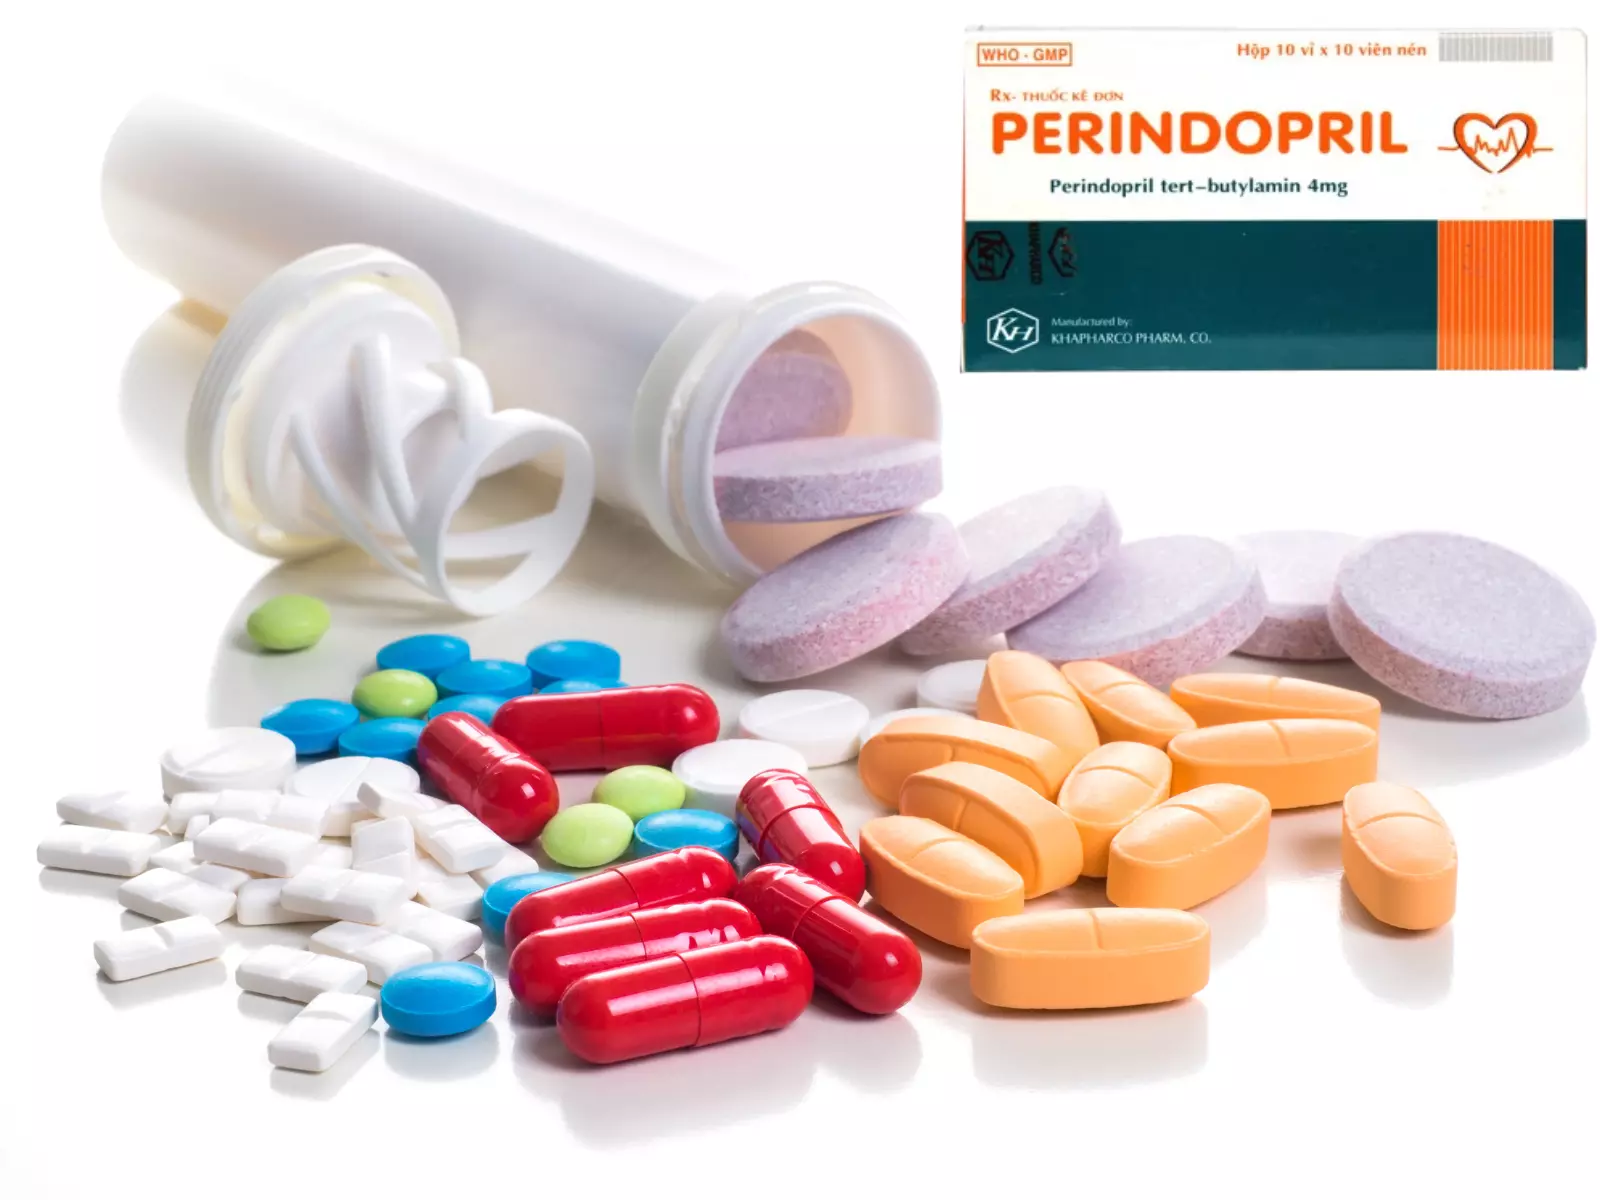 Việc kết hợp Perindopril cùng các thuốc khác phải được chỉ định theo hướng dẫn của bác sĩ chuyên khoa